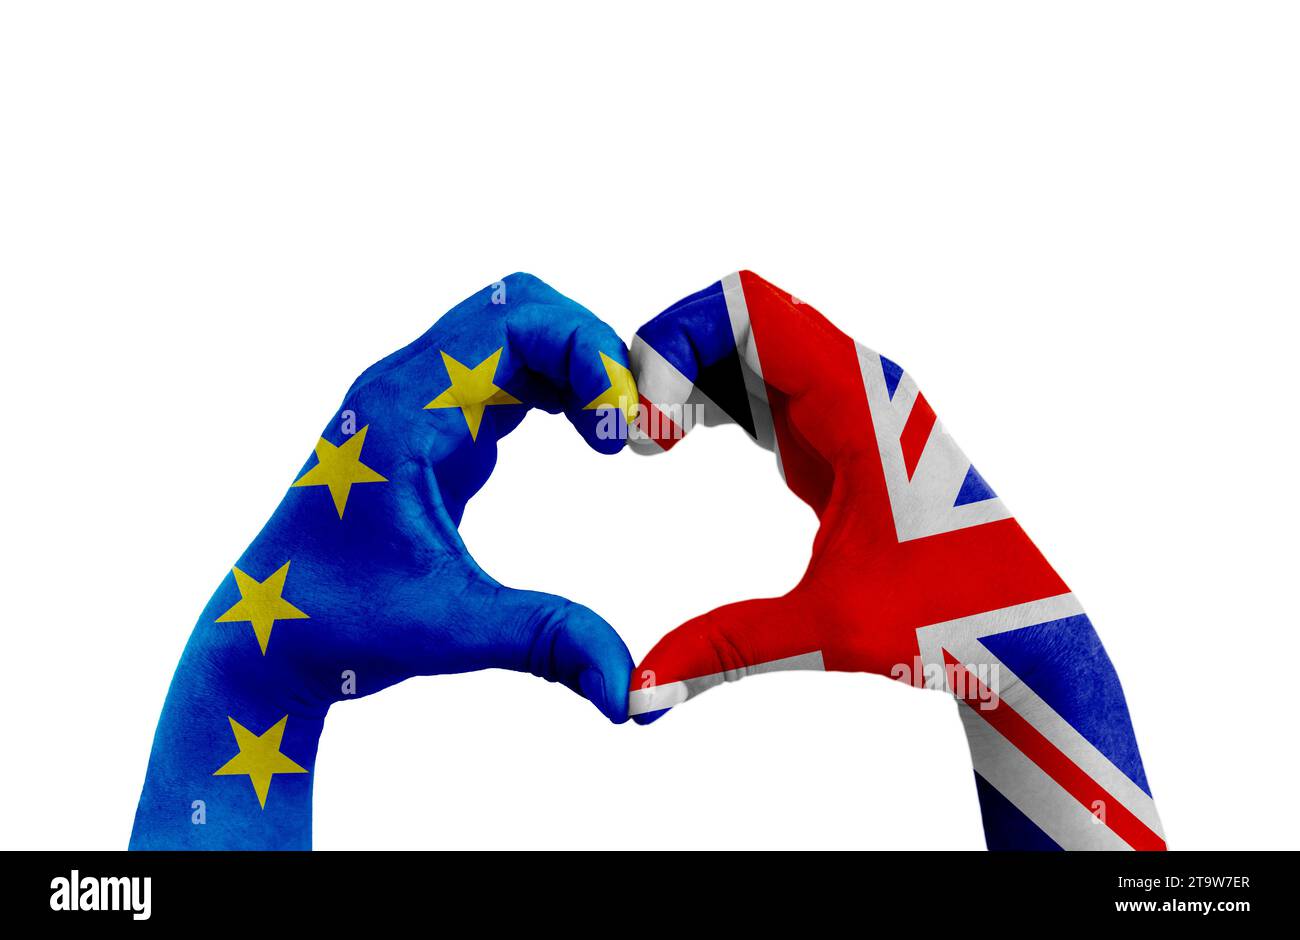 brexit, mani dell'uomo a forma di cuore modellate con la bandiera blu dell'unione europea e la bandiera della Gran bretagna regno unito sullo sfondo bianco, vota referendum per il concetto di uscita del regno unito Foto Stock